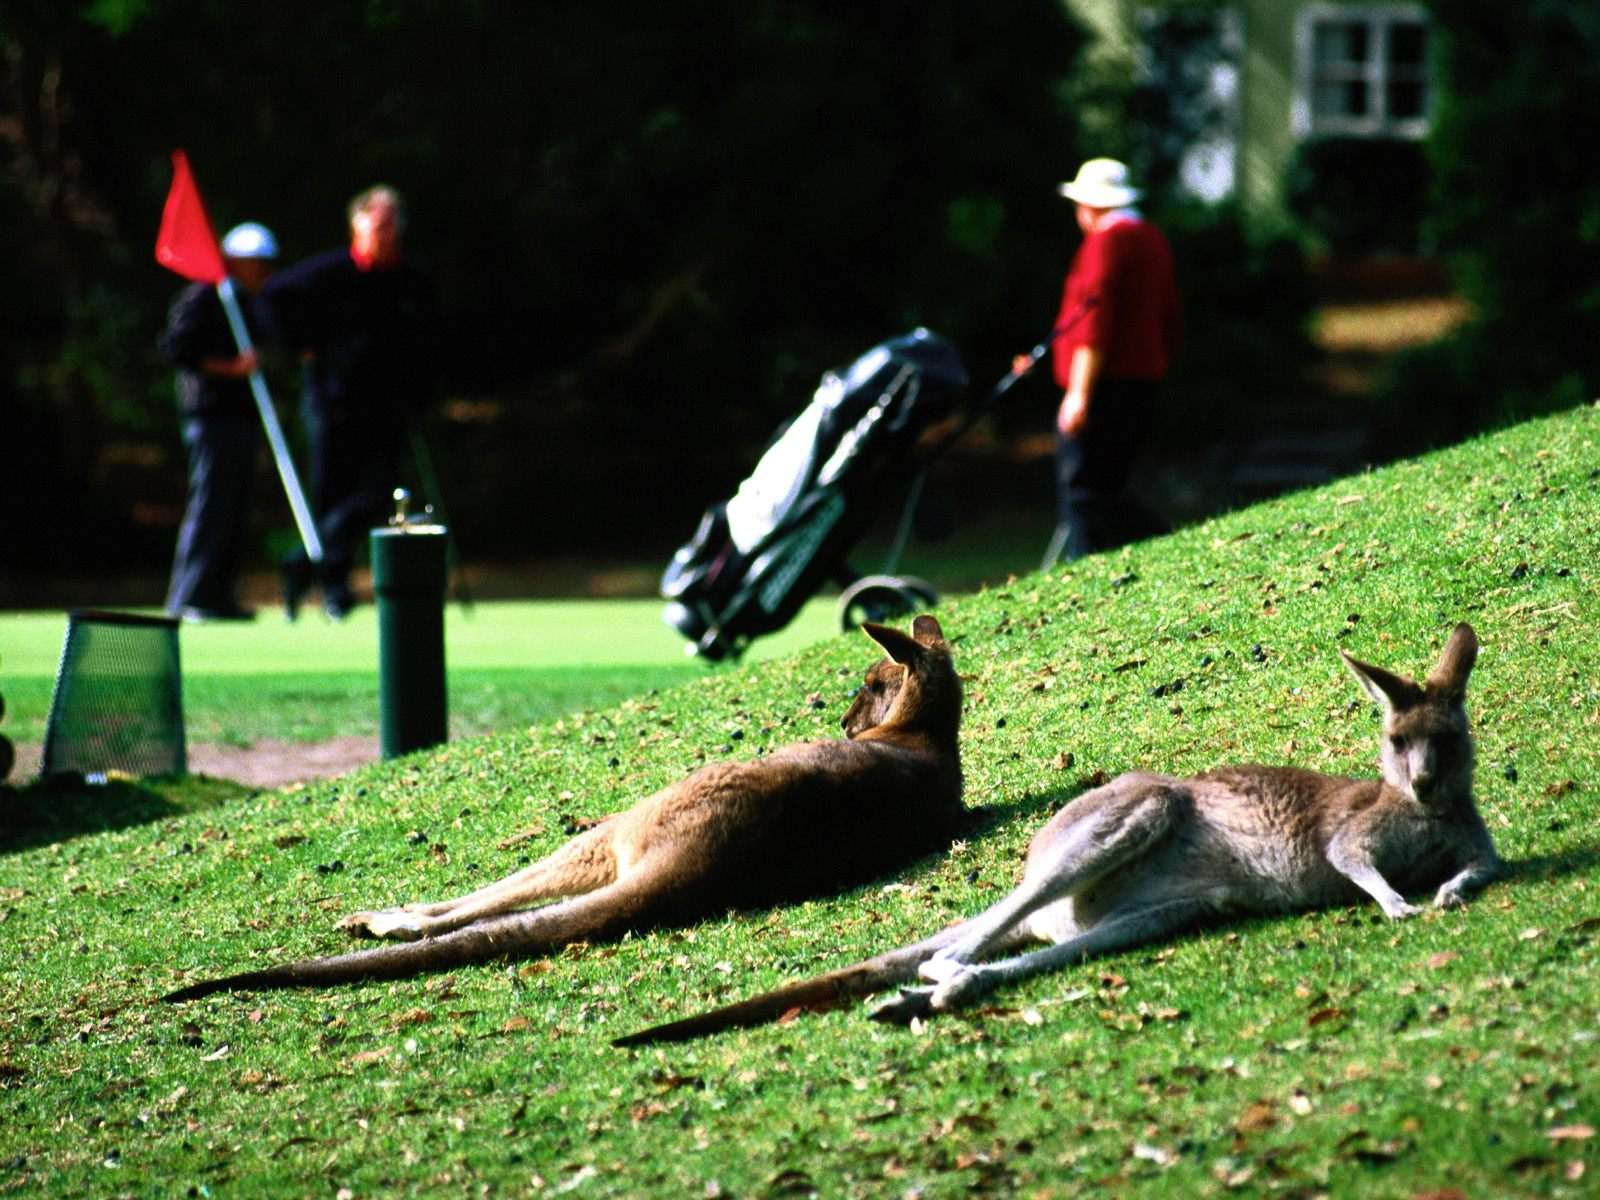 Лежащие на земле кенгуру, фото обои, фотография картинка